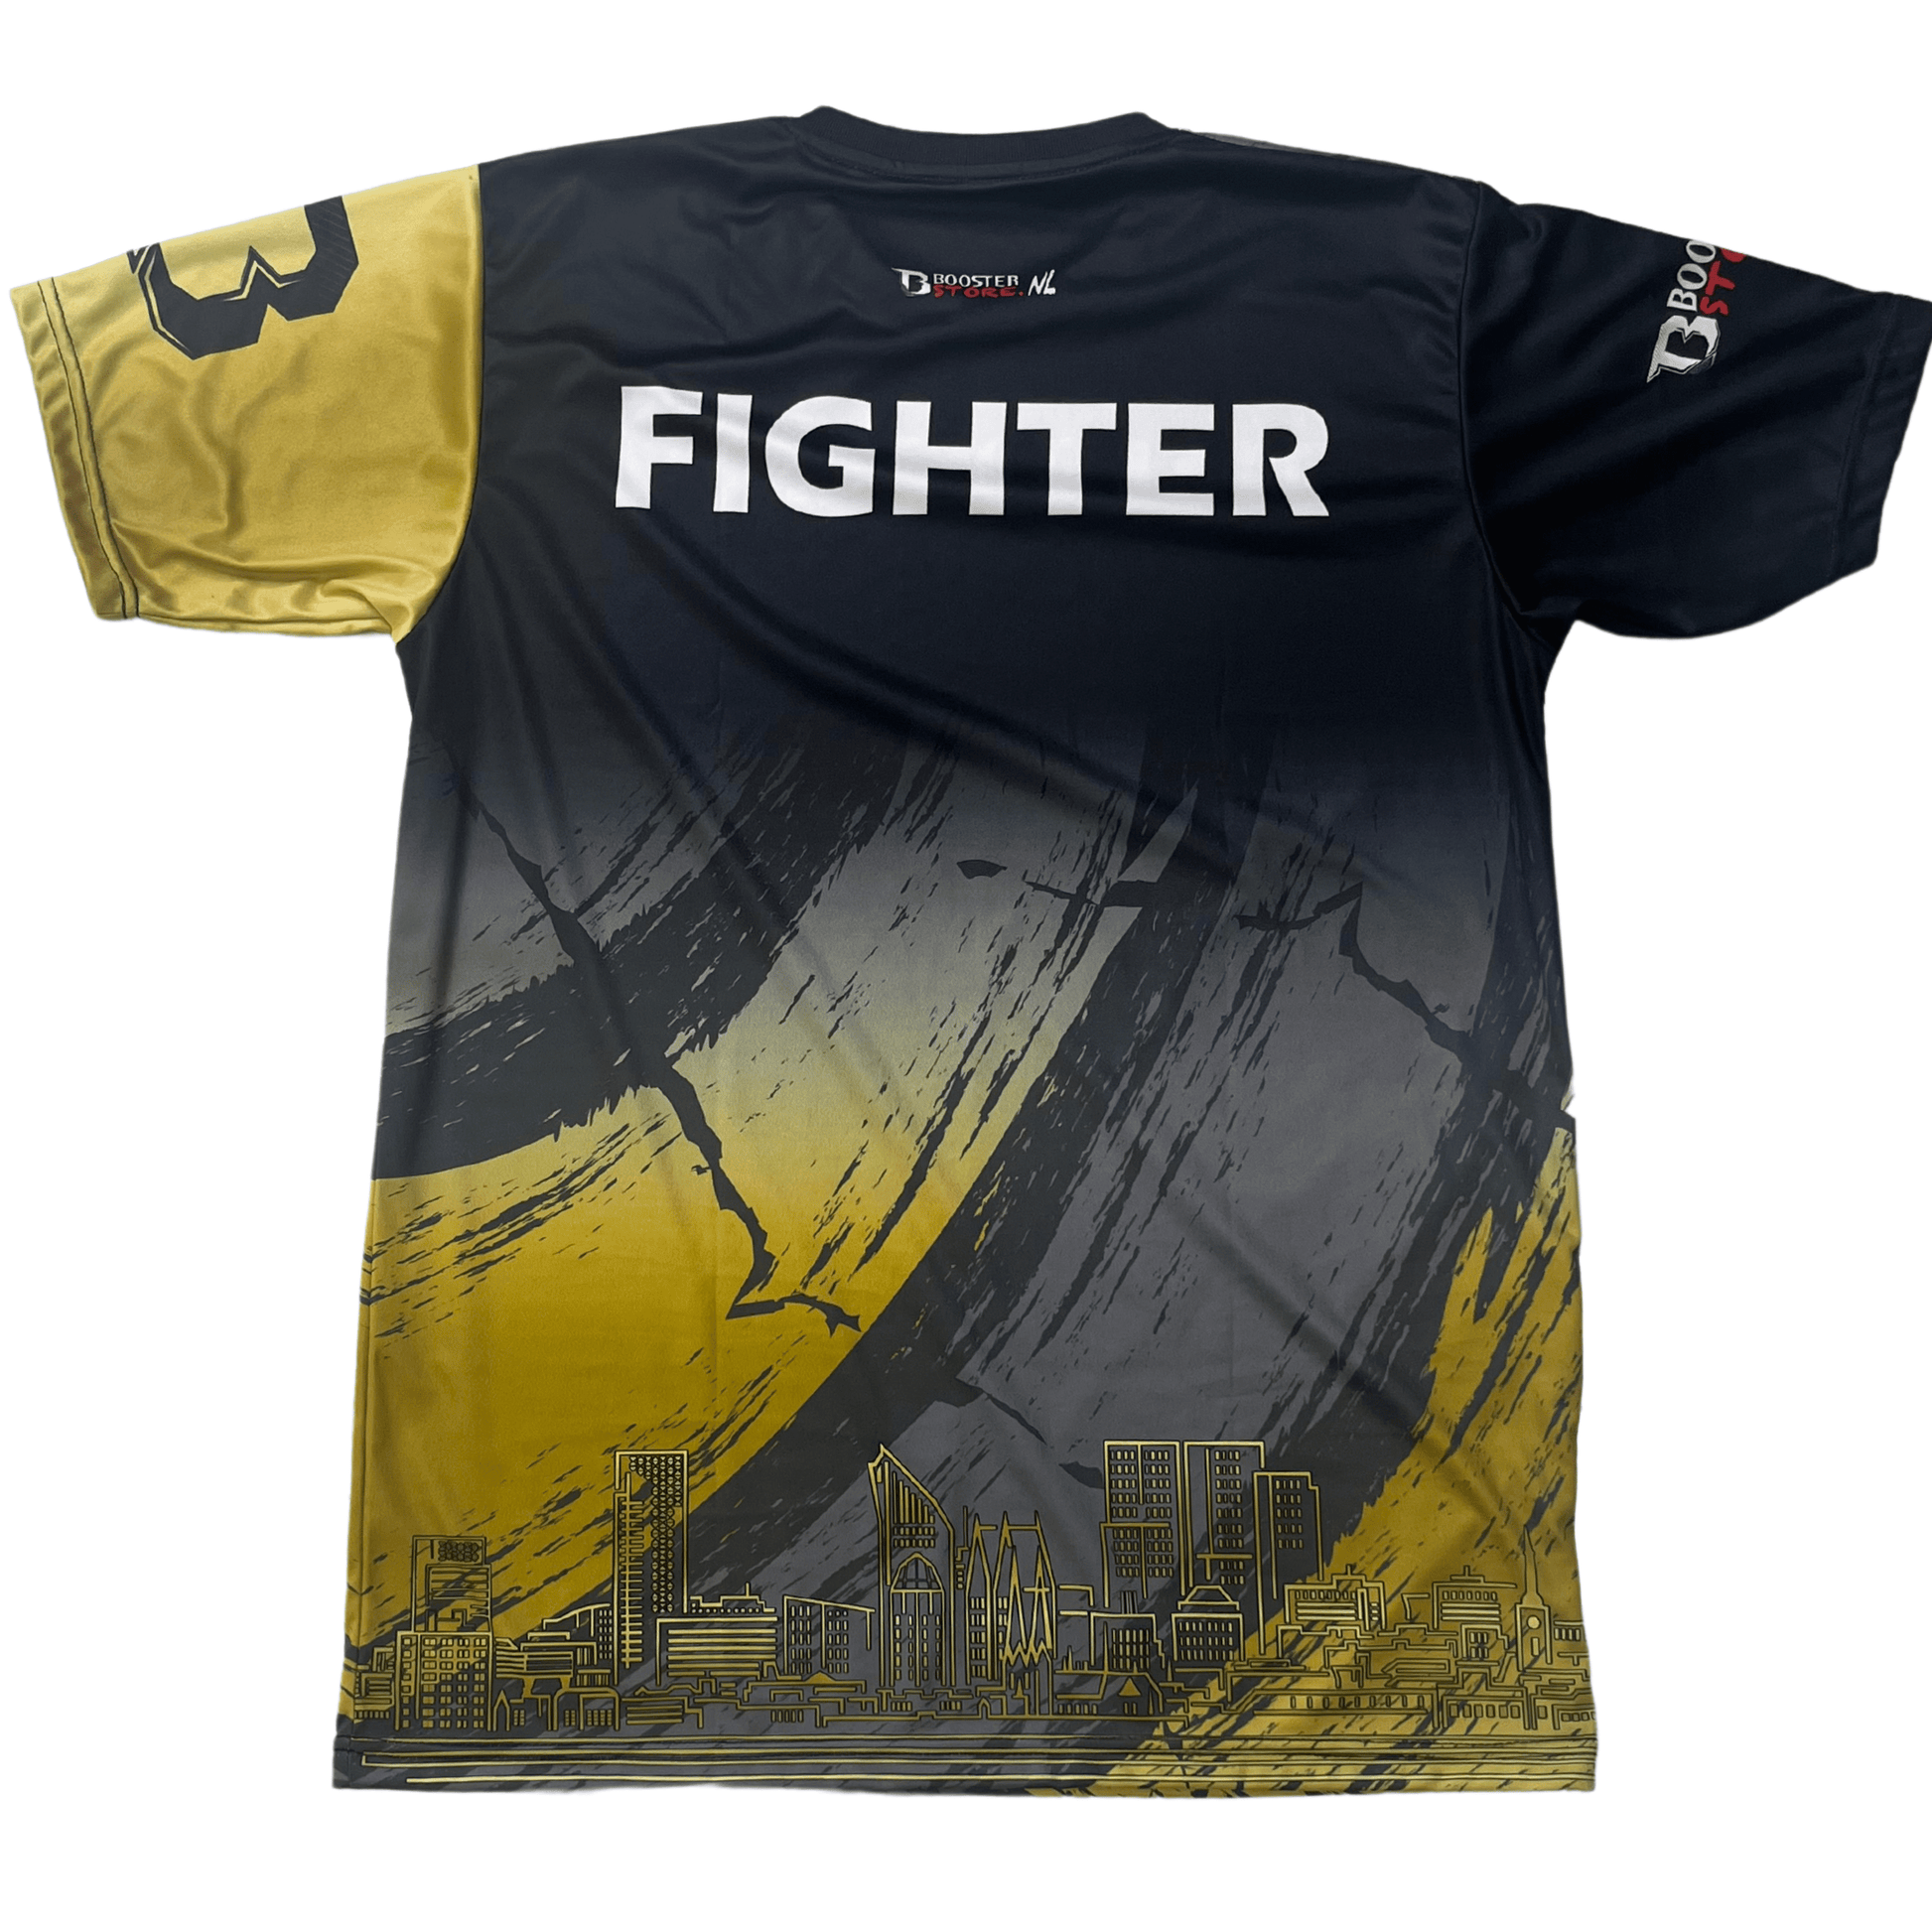 Golden Strike Booster Fight Shirt